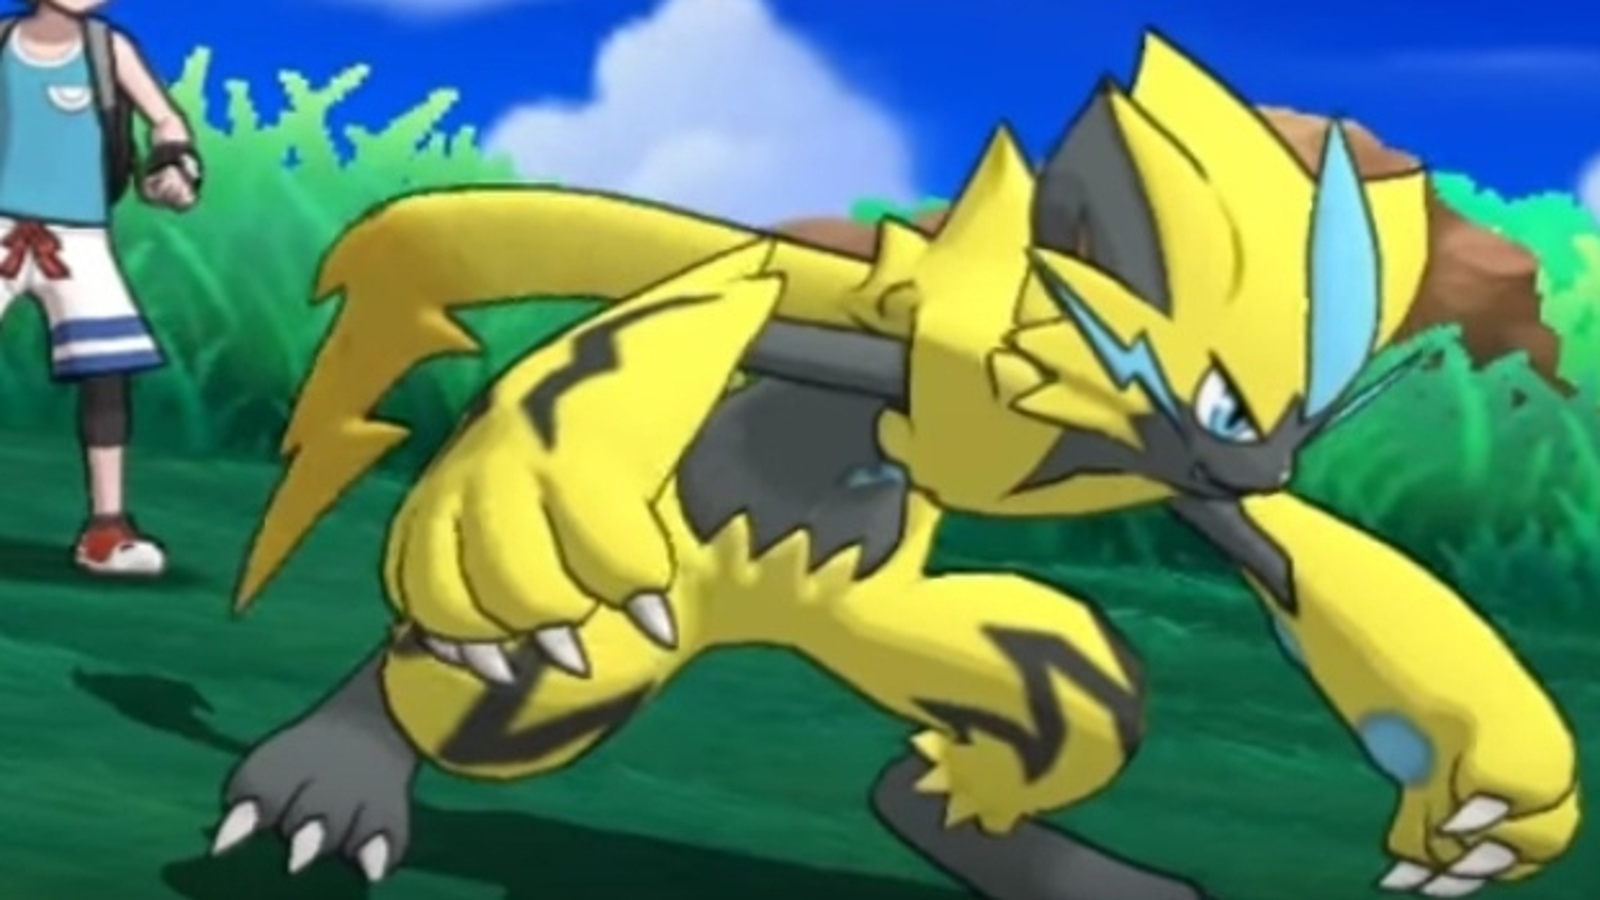 Pokémon Ultra Sun e Moon  Revelados detalhes sobre os lendários